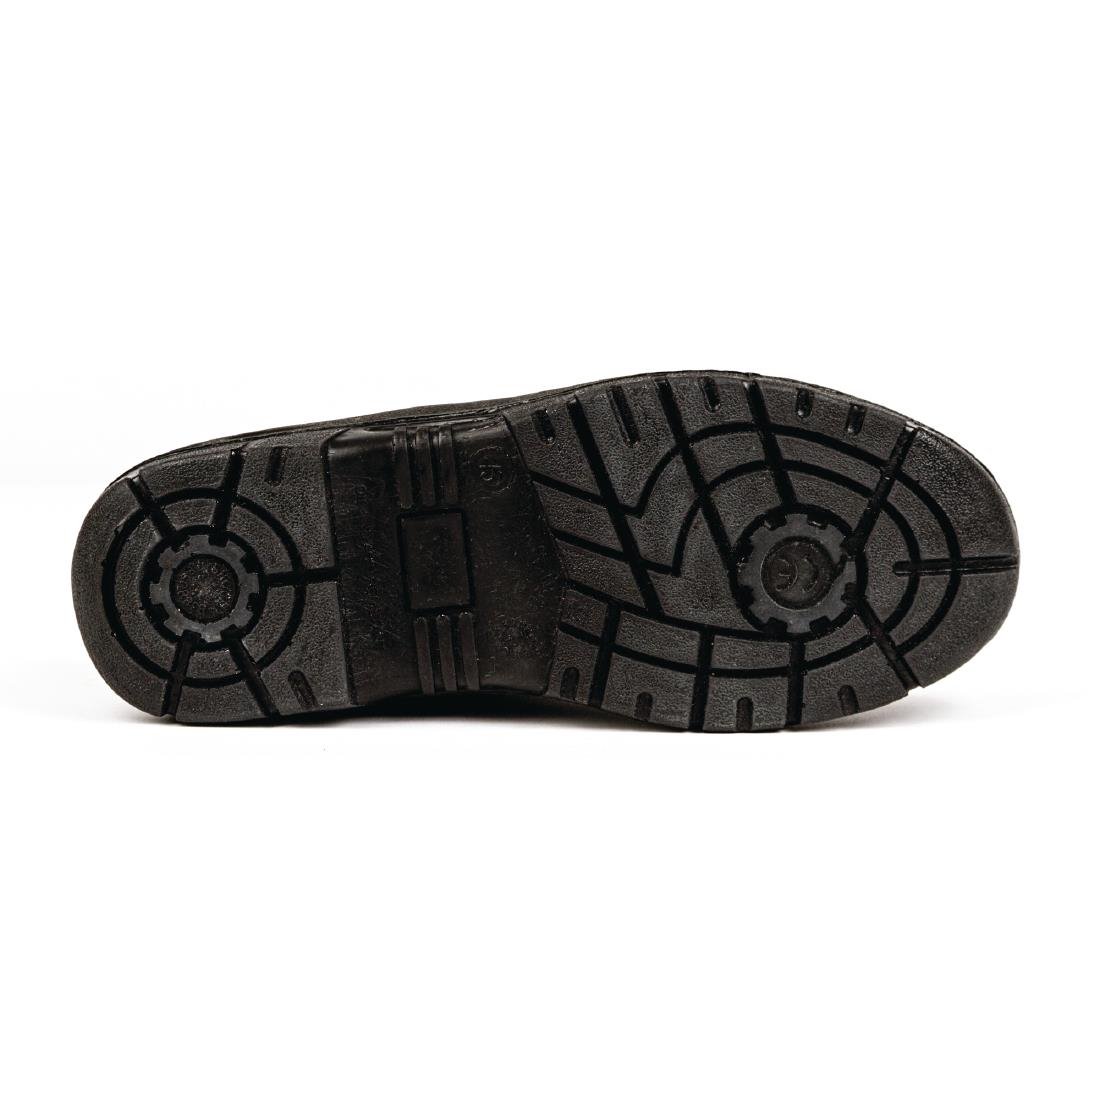 Slipbuster Unisex Safety Shoe Black 42 